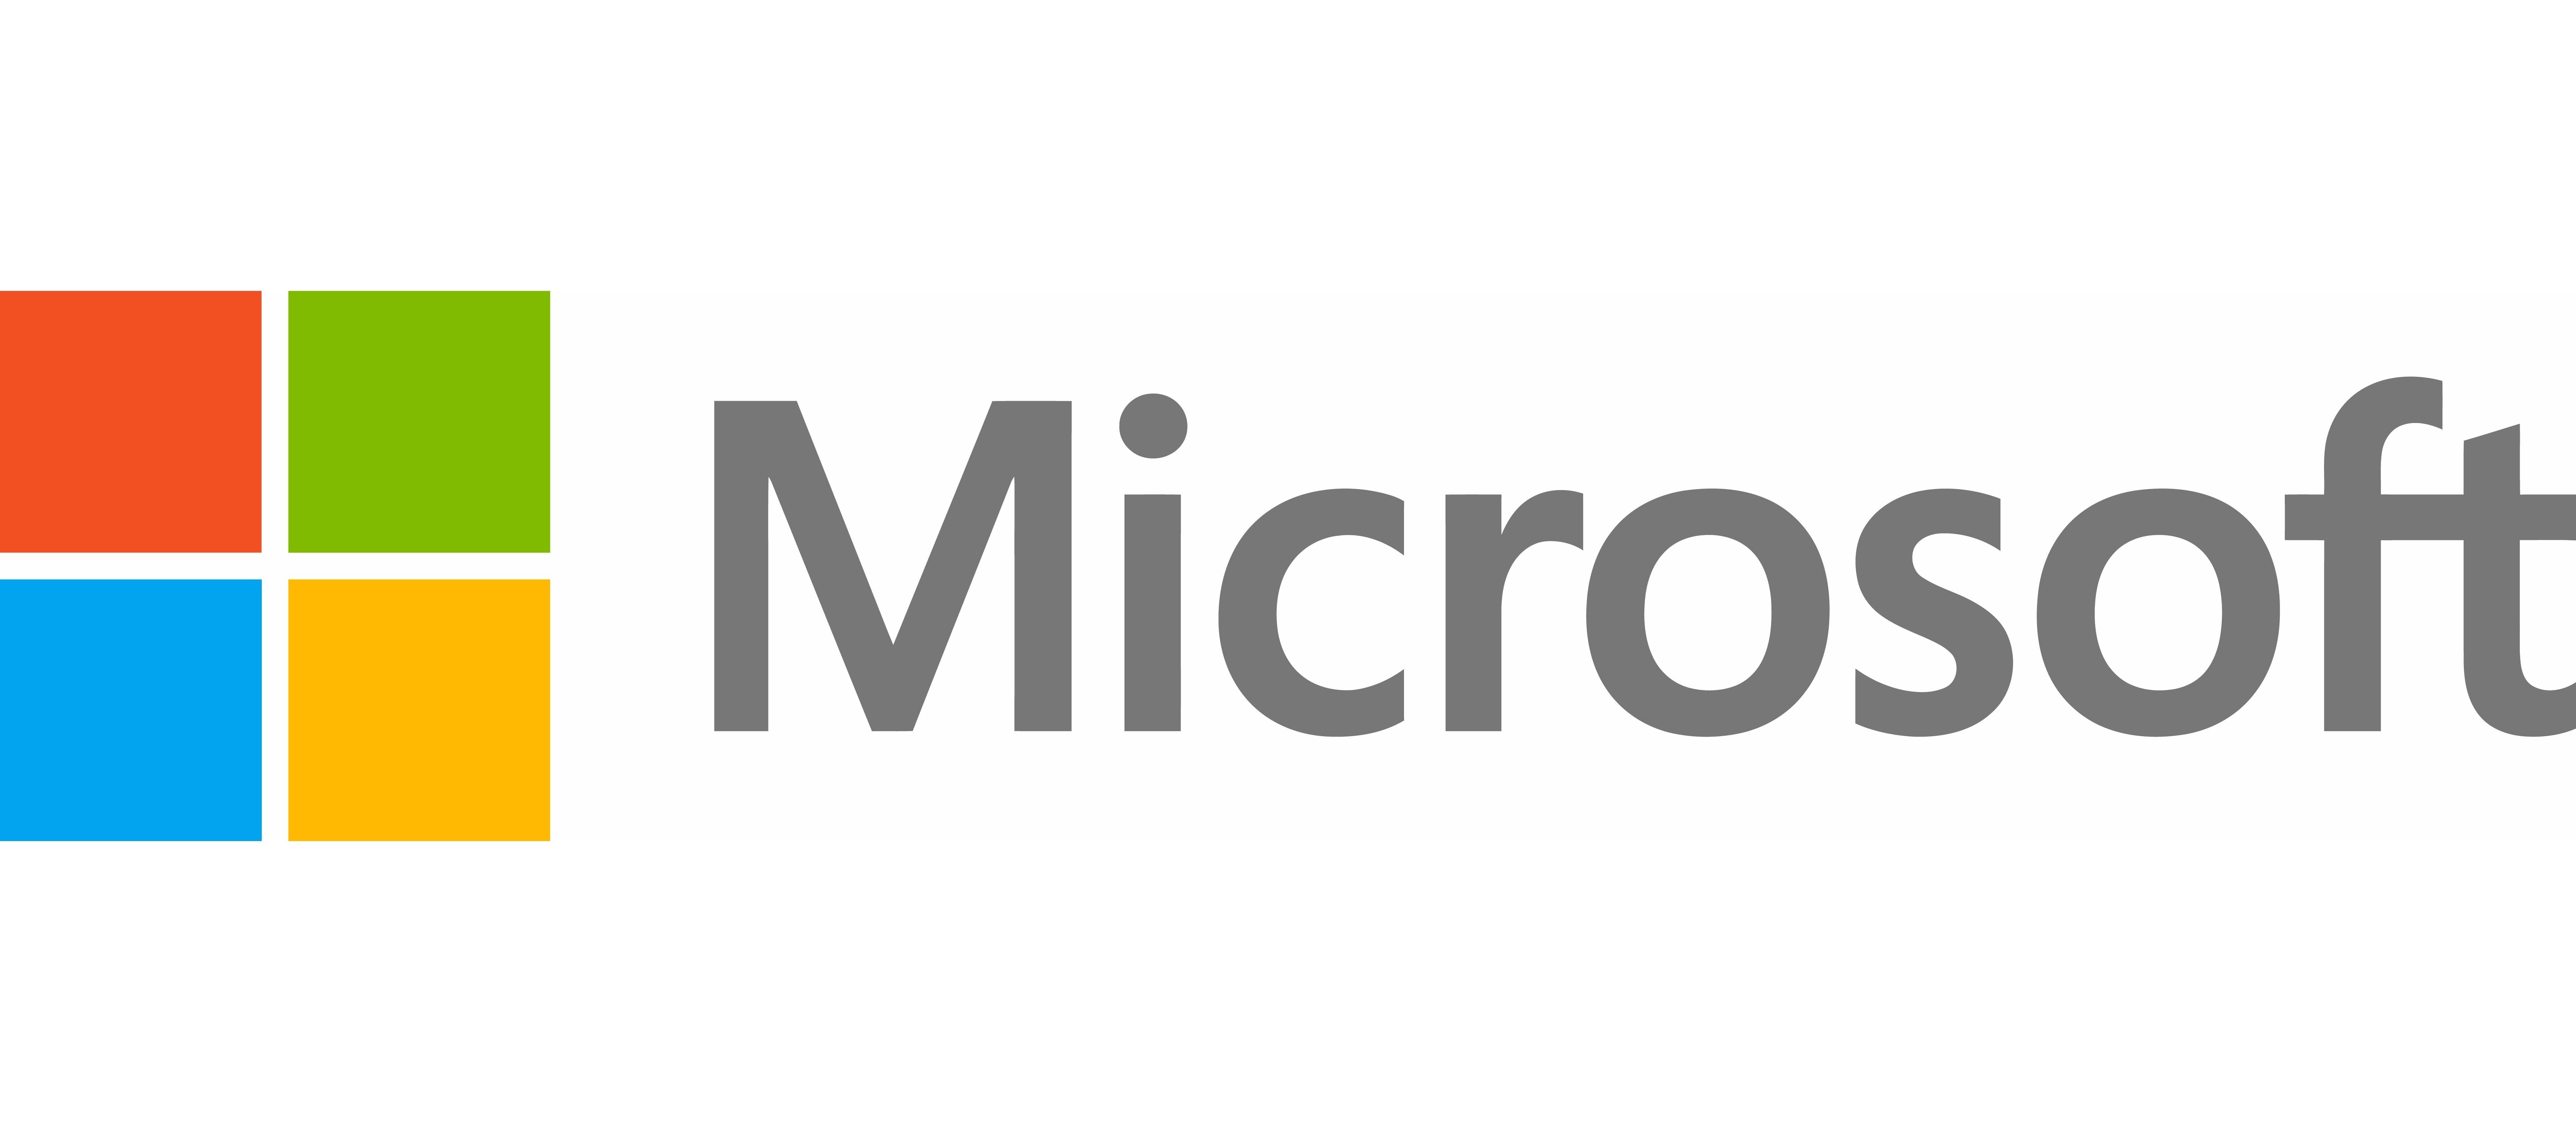 El top 48 imagen el logo de microsoft